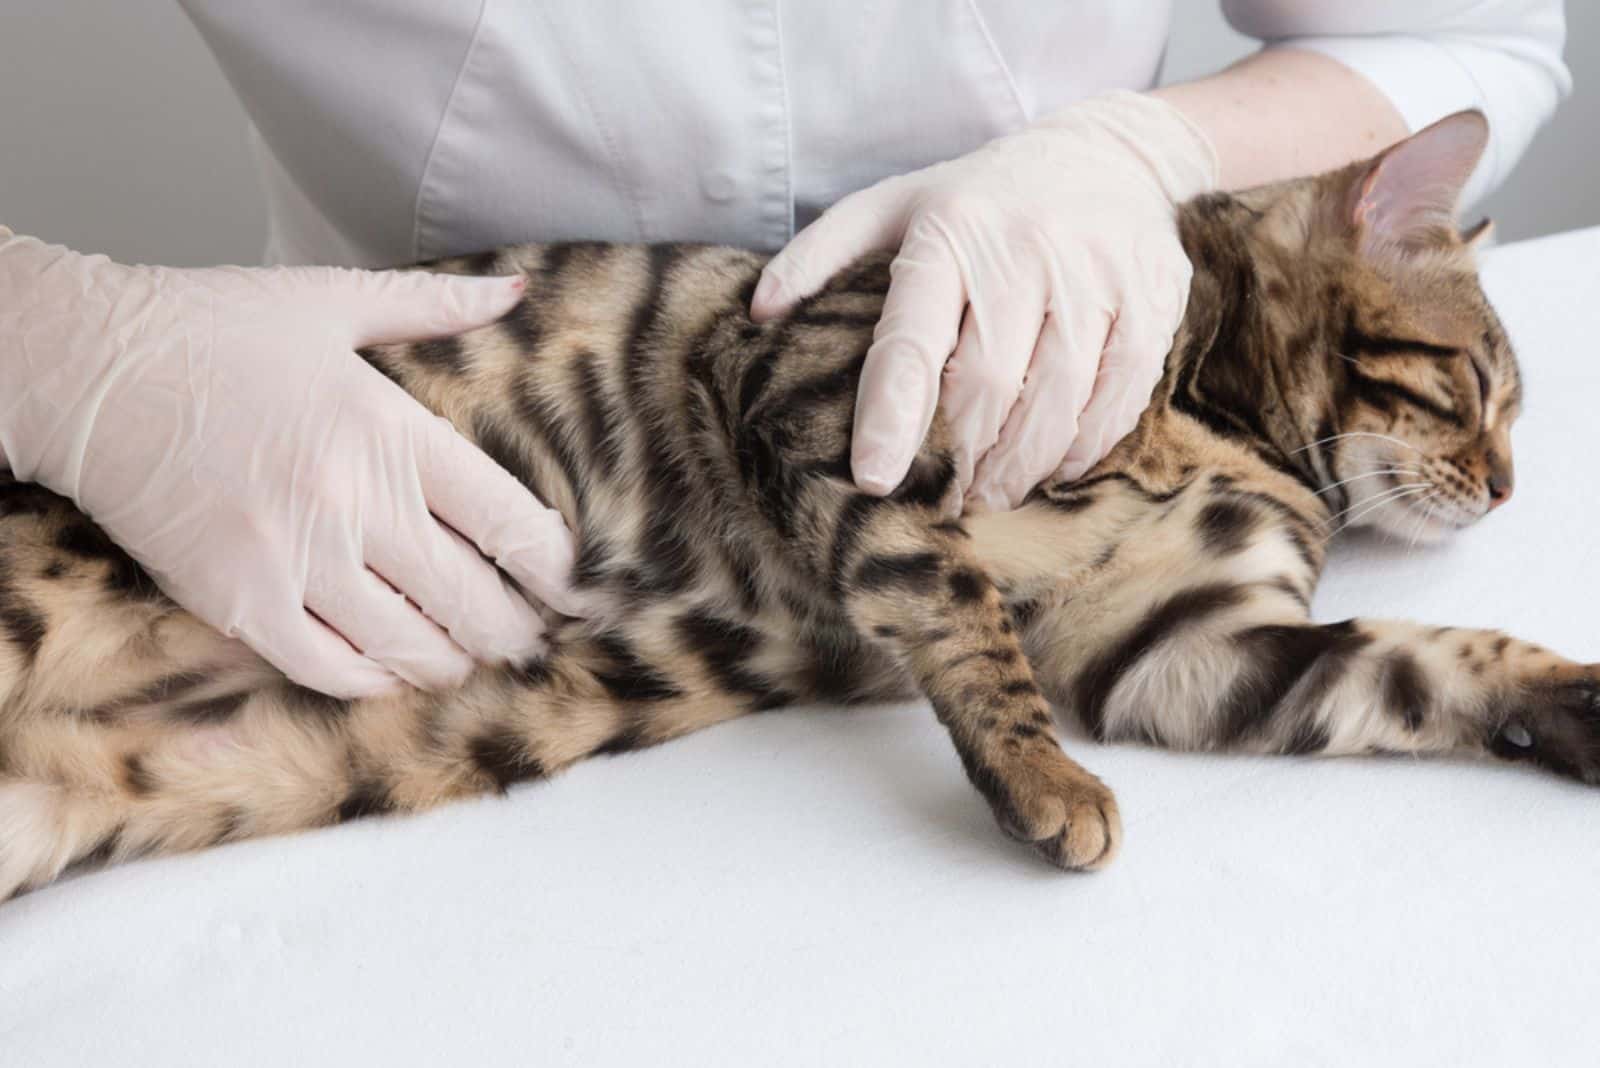 the vet examines the tabby cat